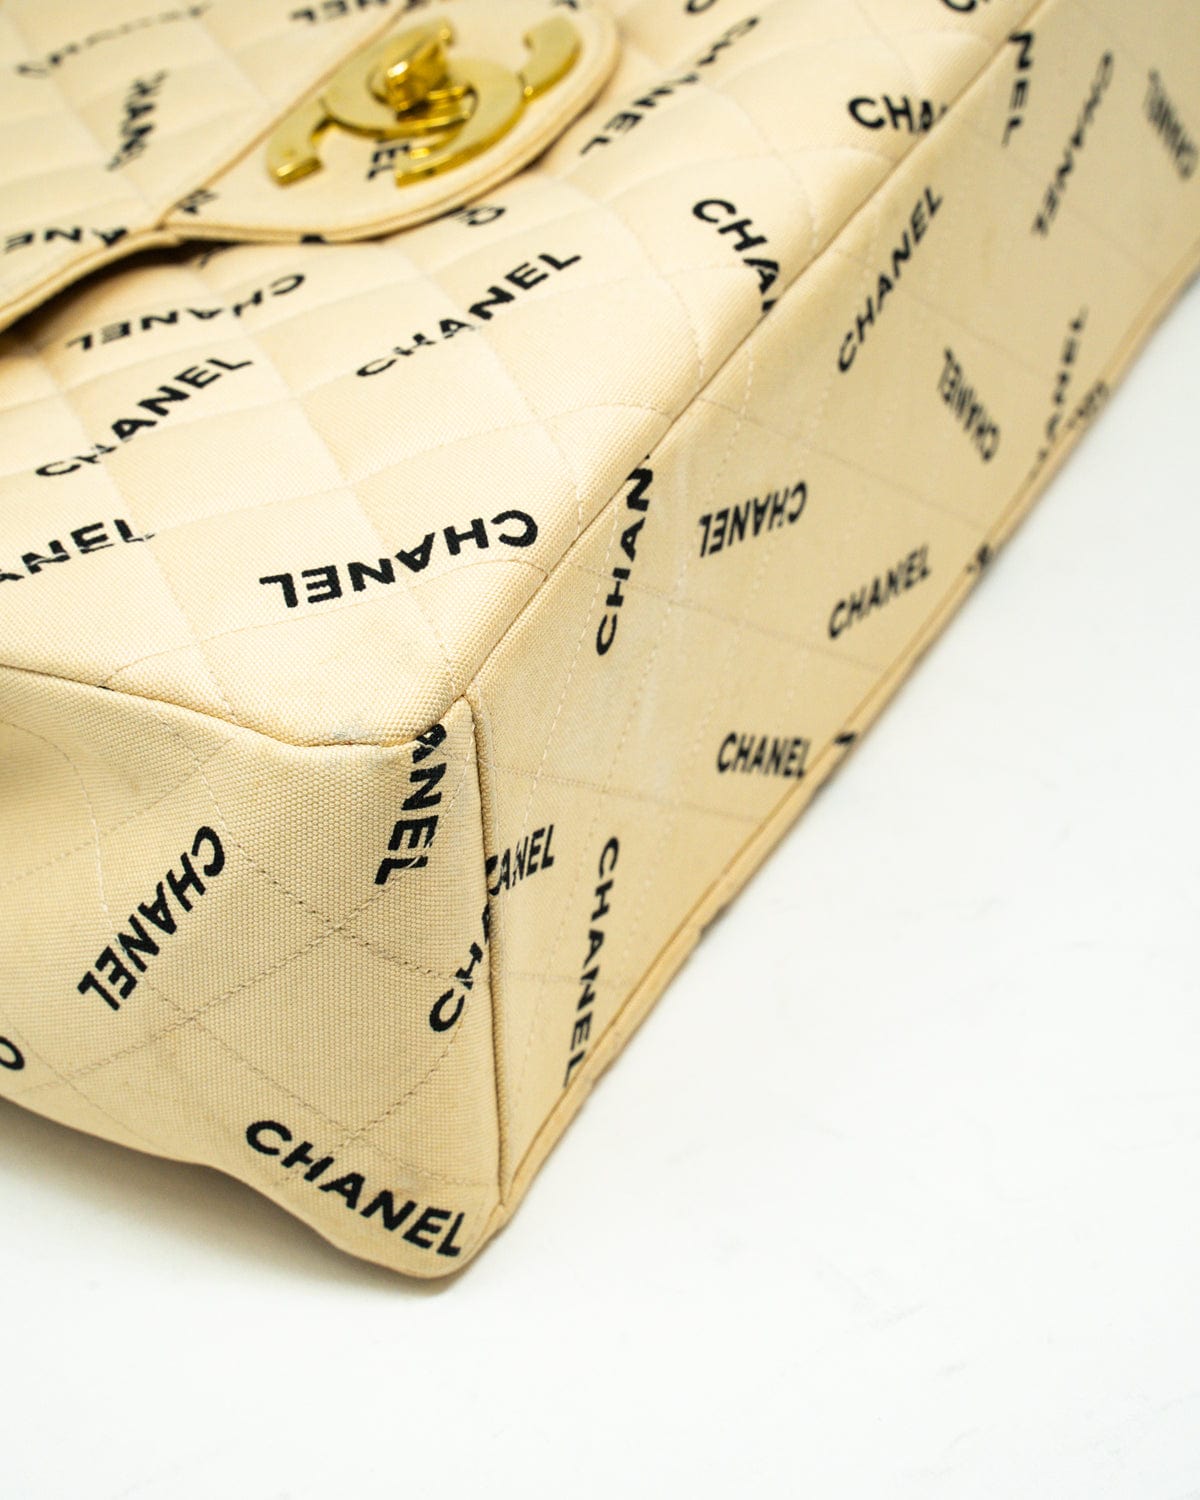 Chanel Chanel Canvas Logo beige Jumbo bag - AWL2558